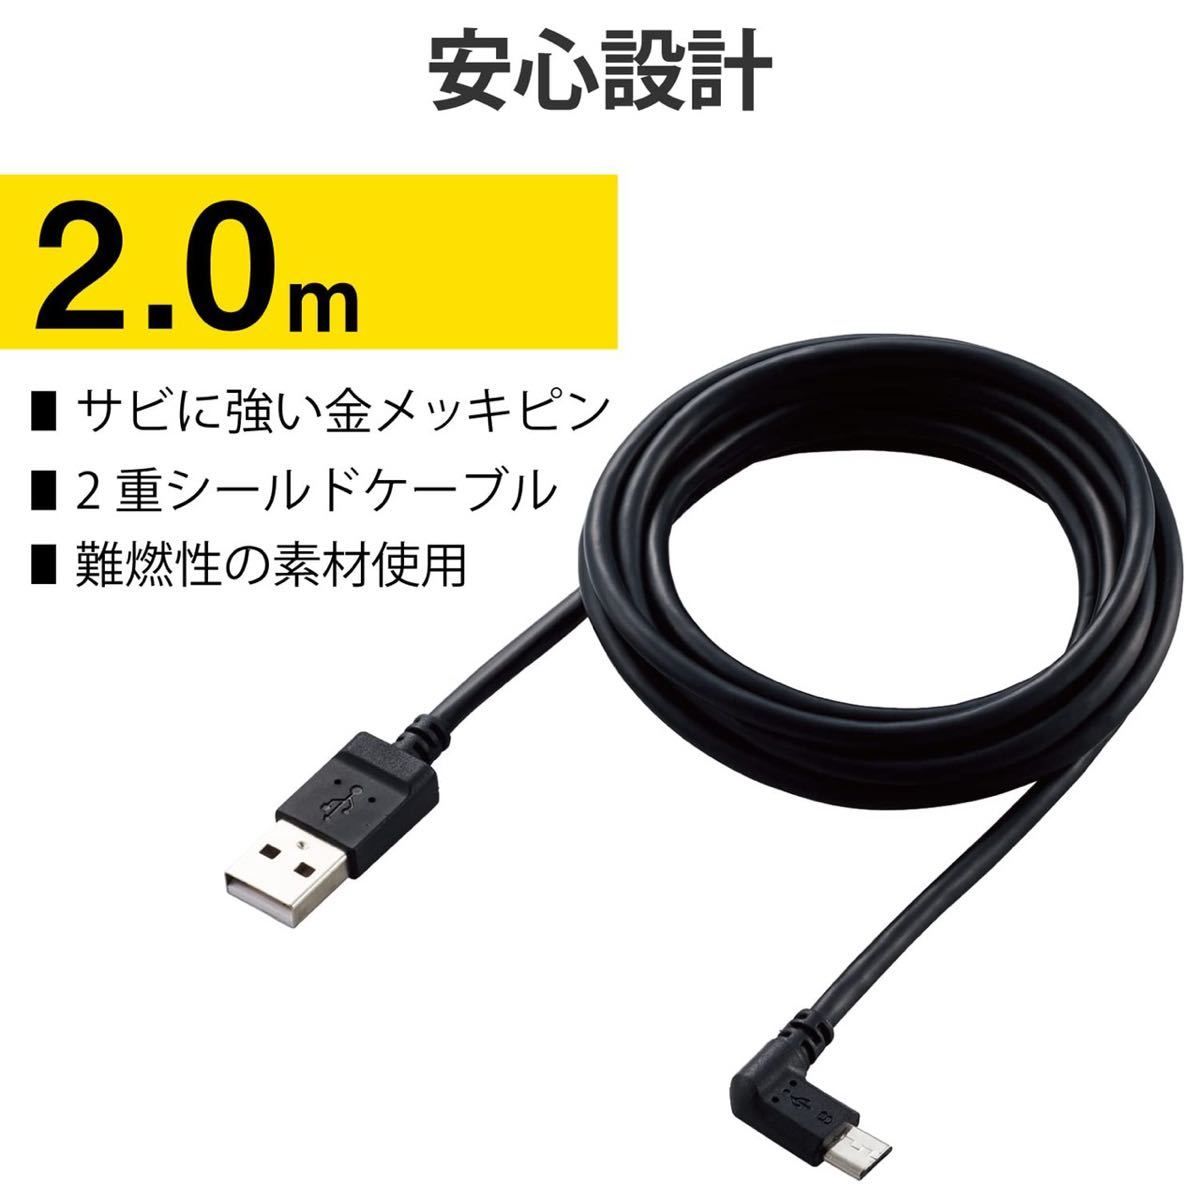 【ジャンク品】USBケーブル カメラ接続用L字 2m DGW-AMBL20BK